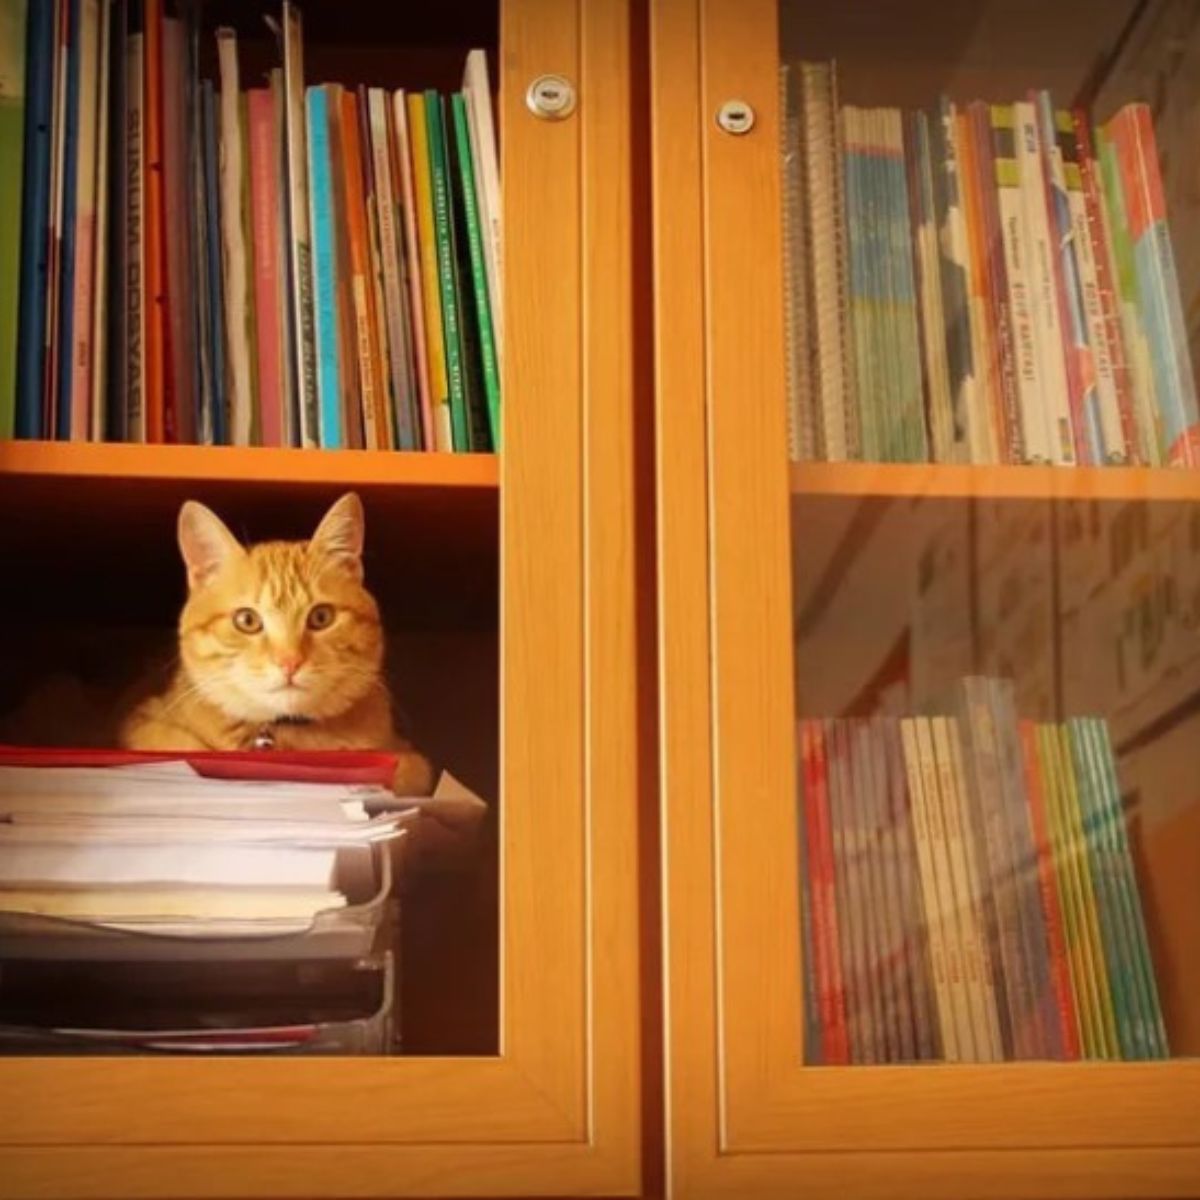 cat on a book shelf